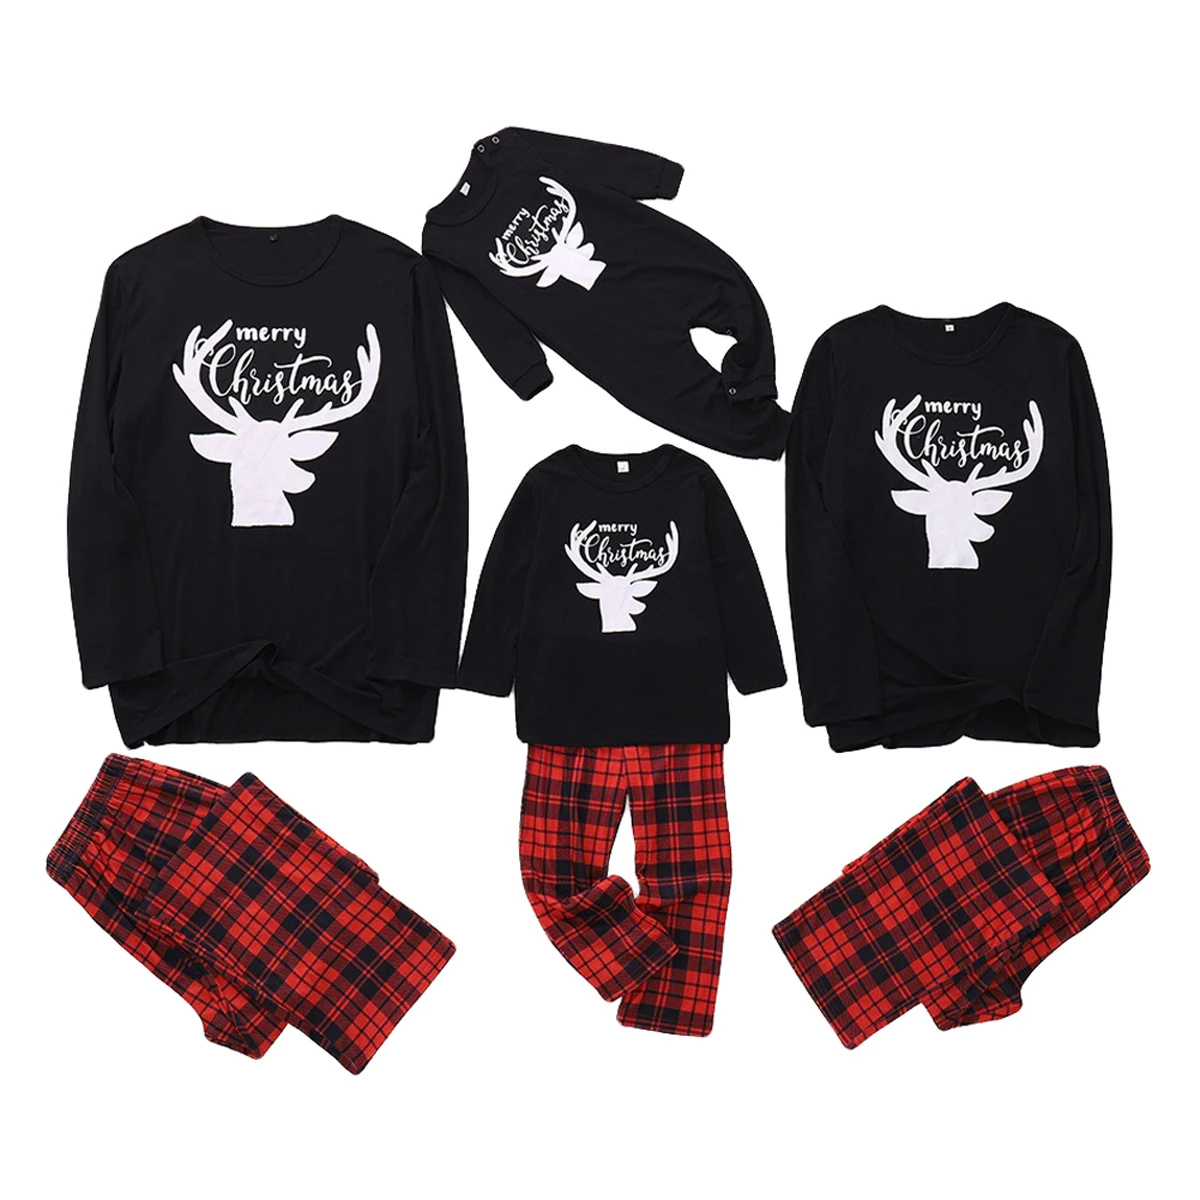 La familia Pijamas Trajes de Navidad de Padre-hijo Traje de la Familia de Coincidencia de Elk Carta a Cuadros Patrón de la ropa de dormir ropa de Dormir de Navidad de Navidad 4